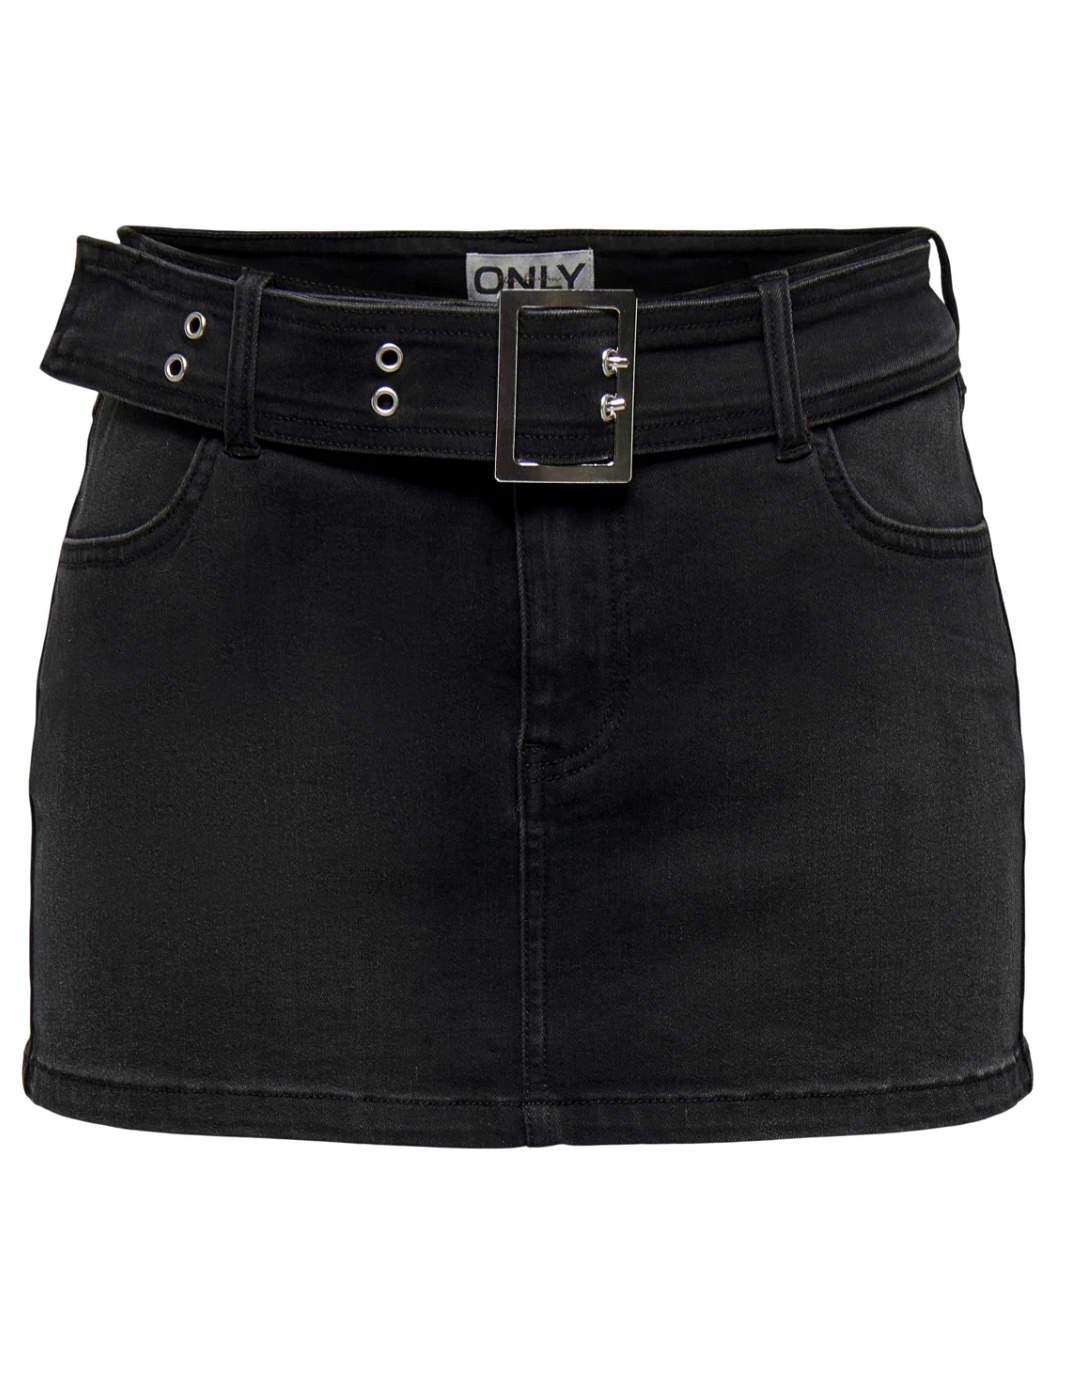 Minifalda Only Nicki denim lavado negro con cinturón mujer